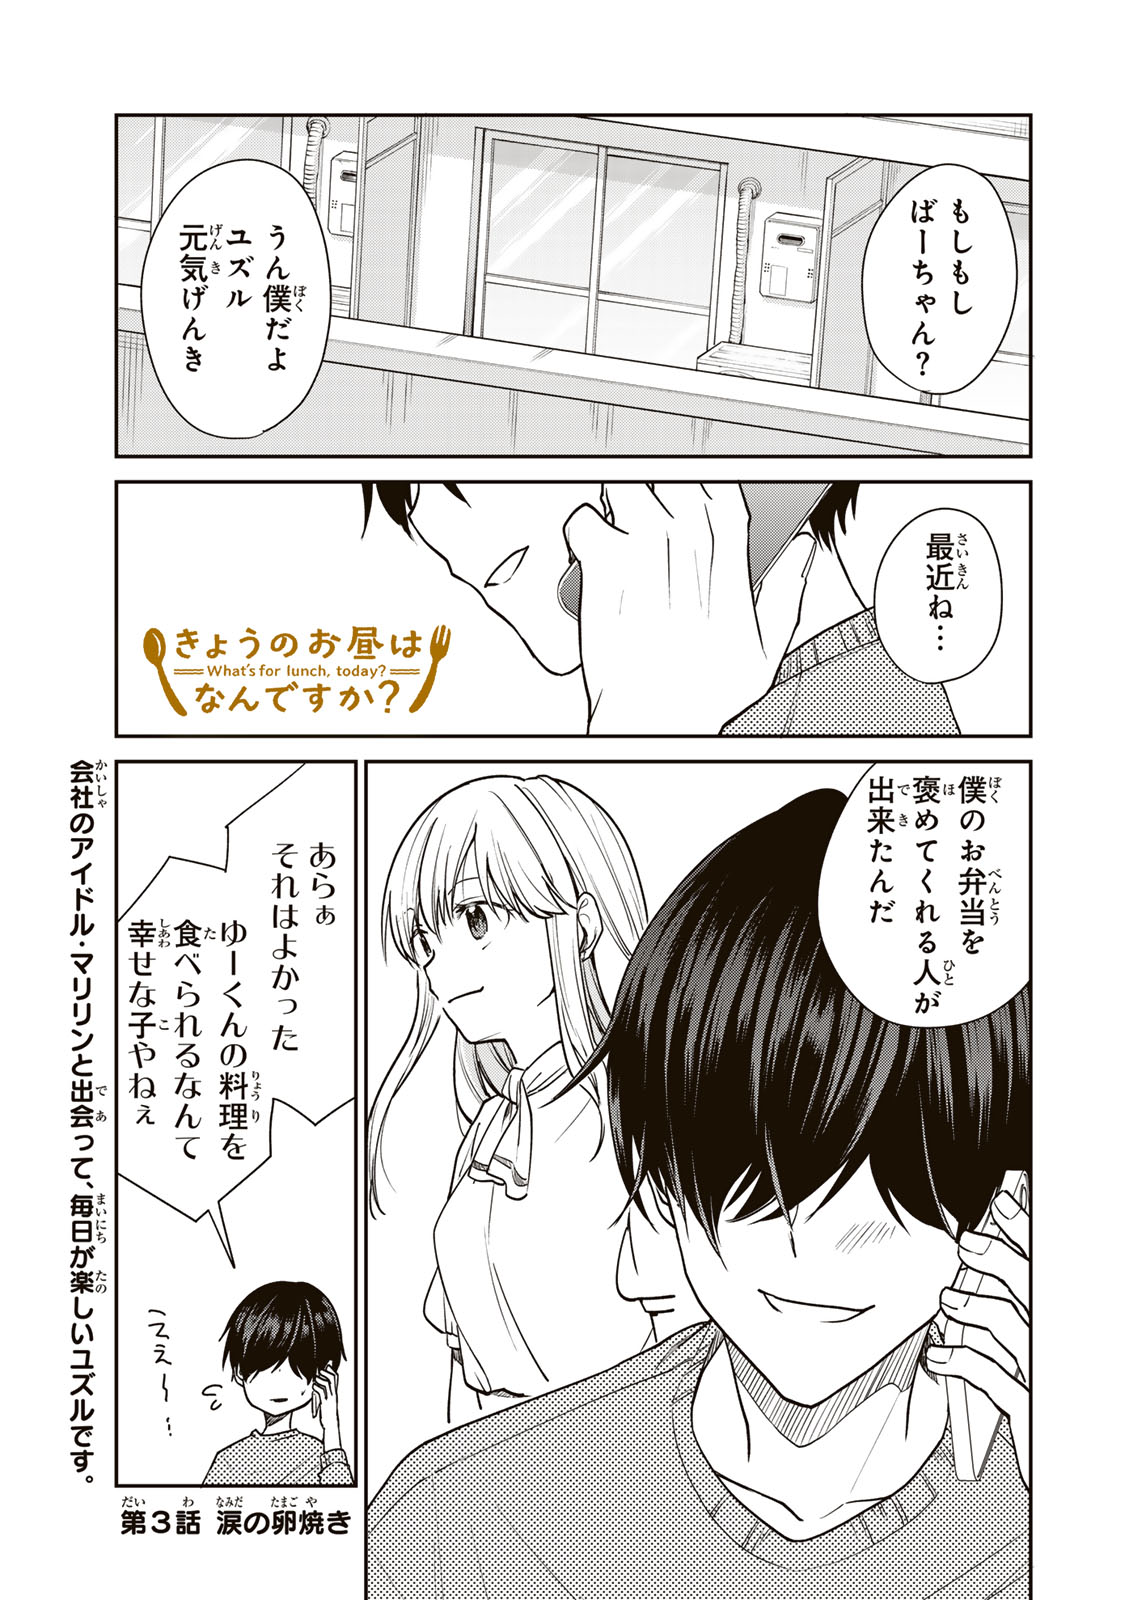 Kyou no Ohiru wa Nan desu ka? - Chapter 3 - Page 1